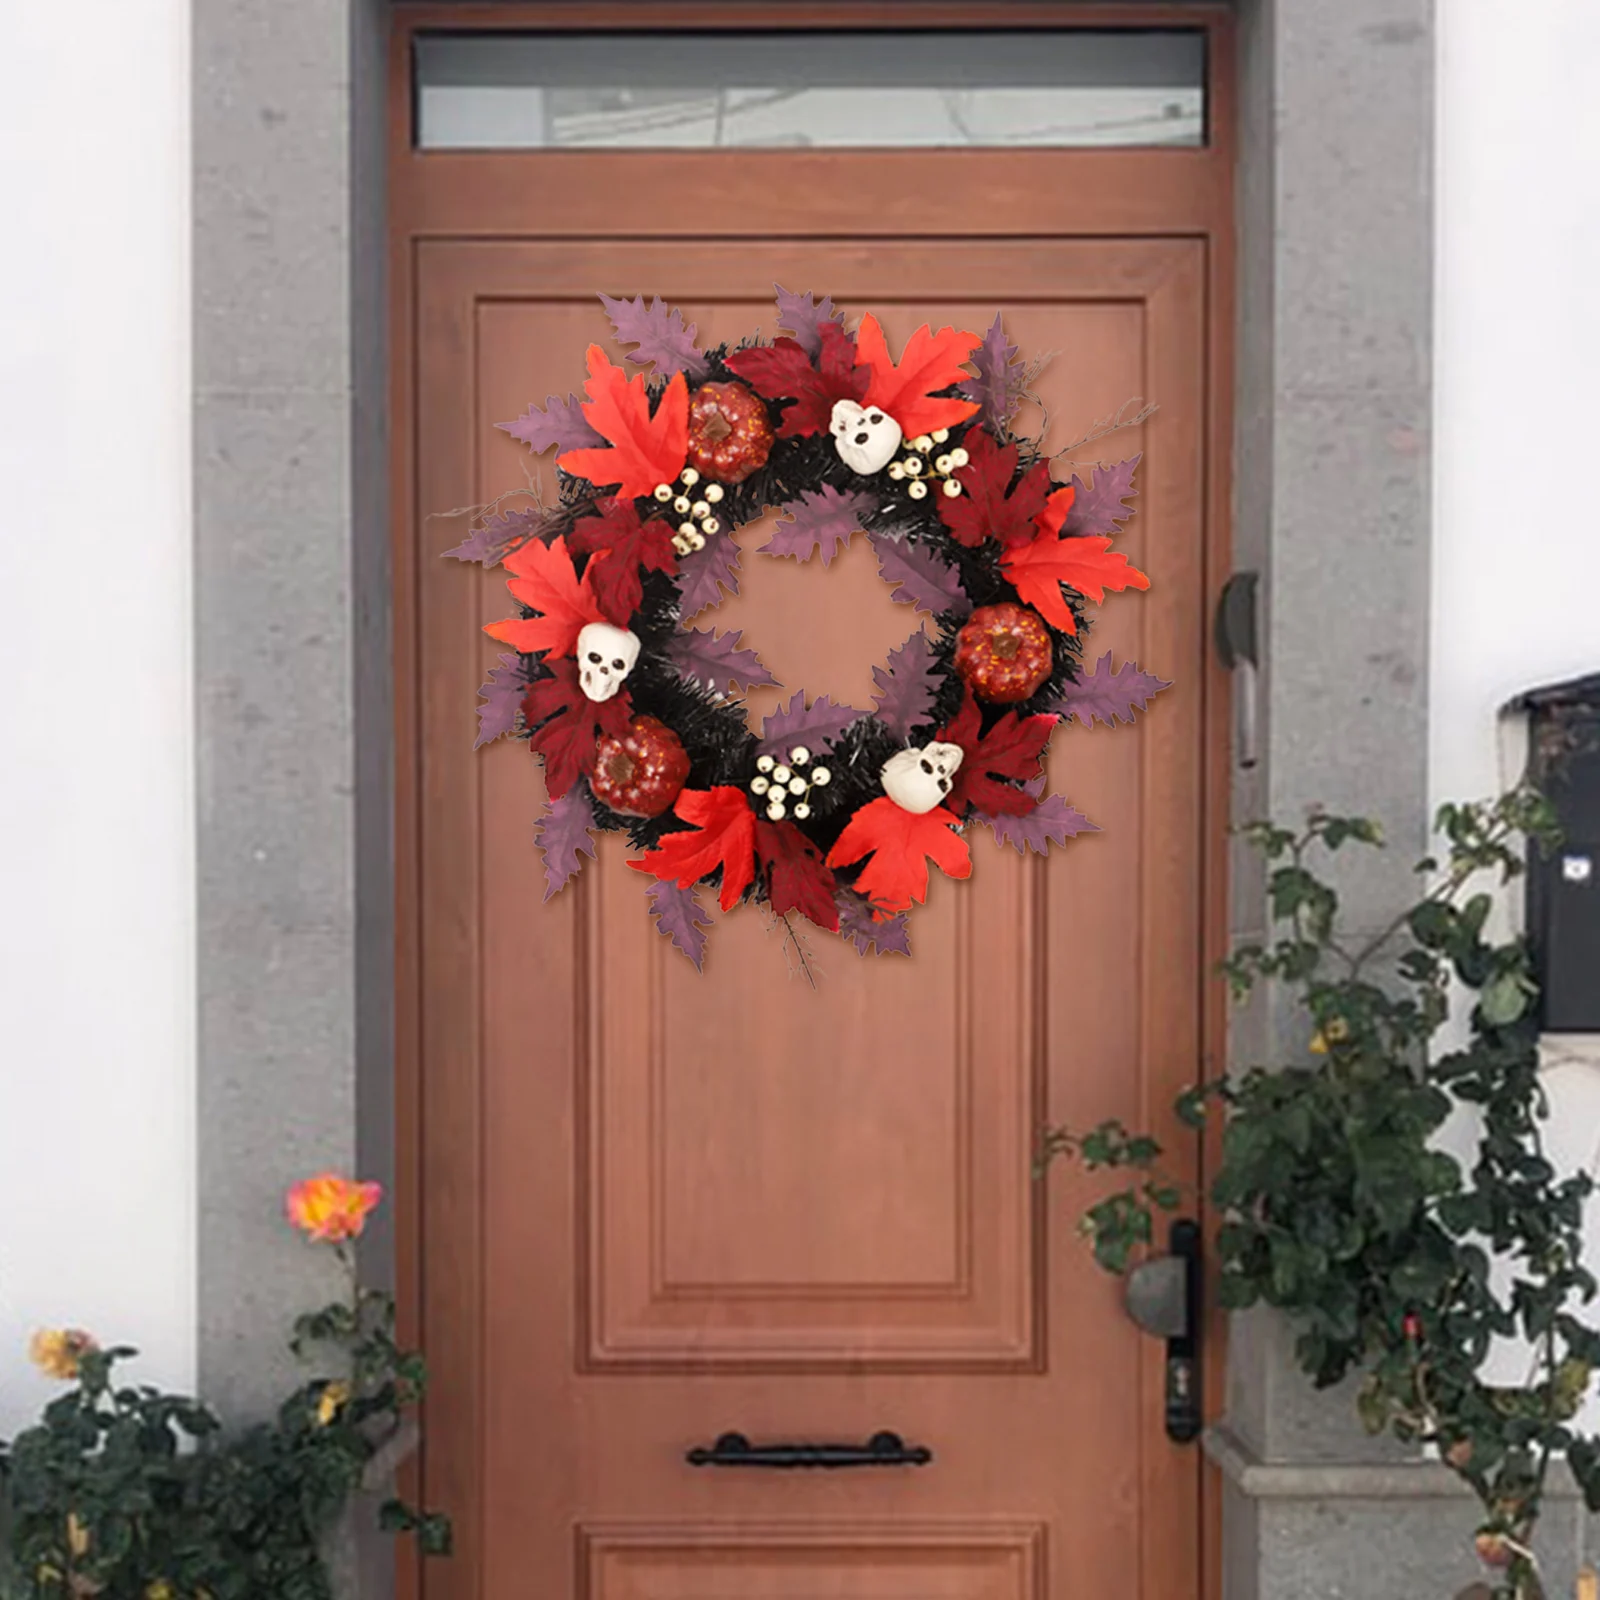 18in Creepy Halloween Wreath Wreath Maple Leaf Hanging Front Door Scary Decorative Outdoor Arrangement Window Home Decors